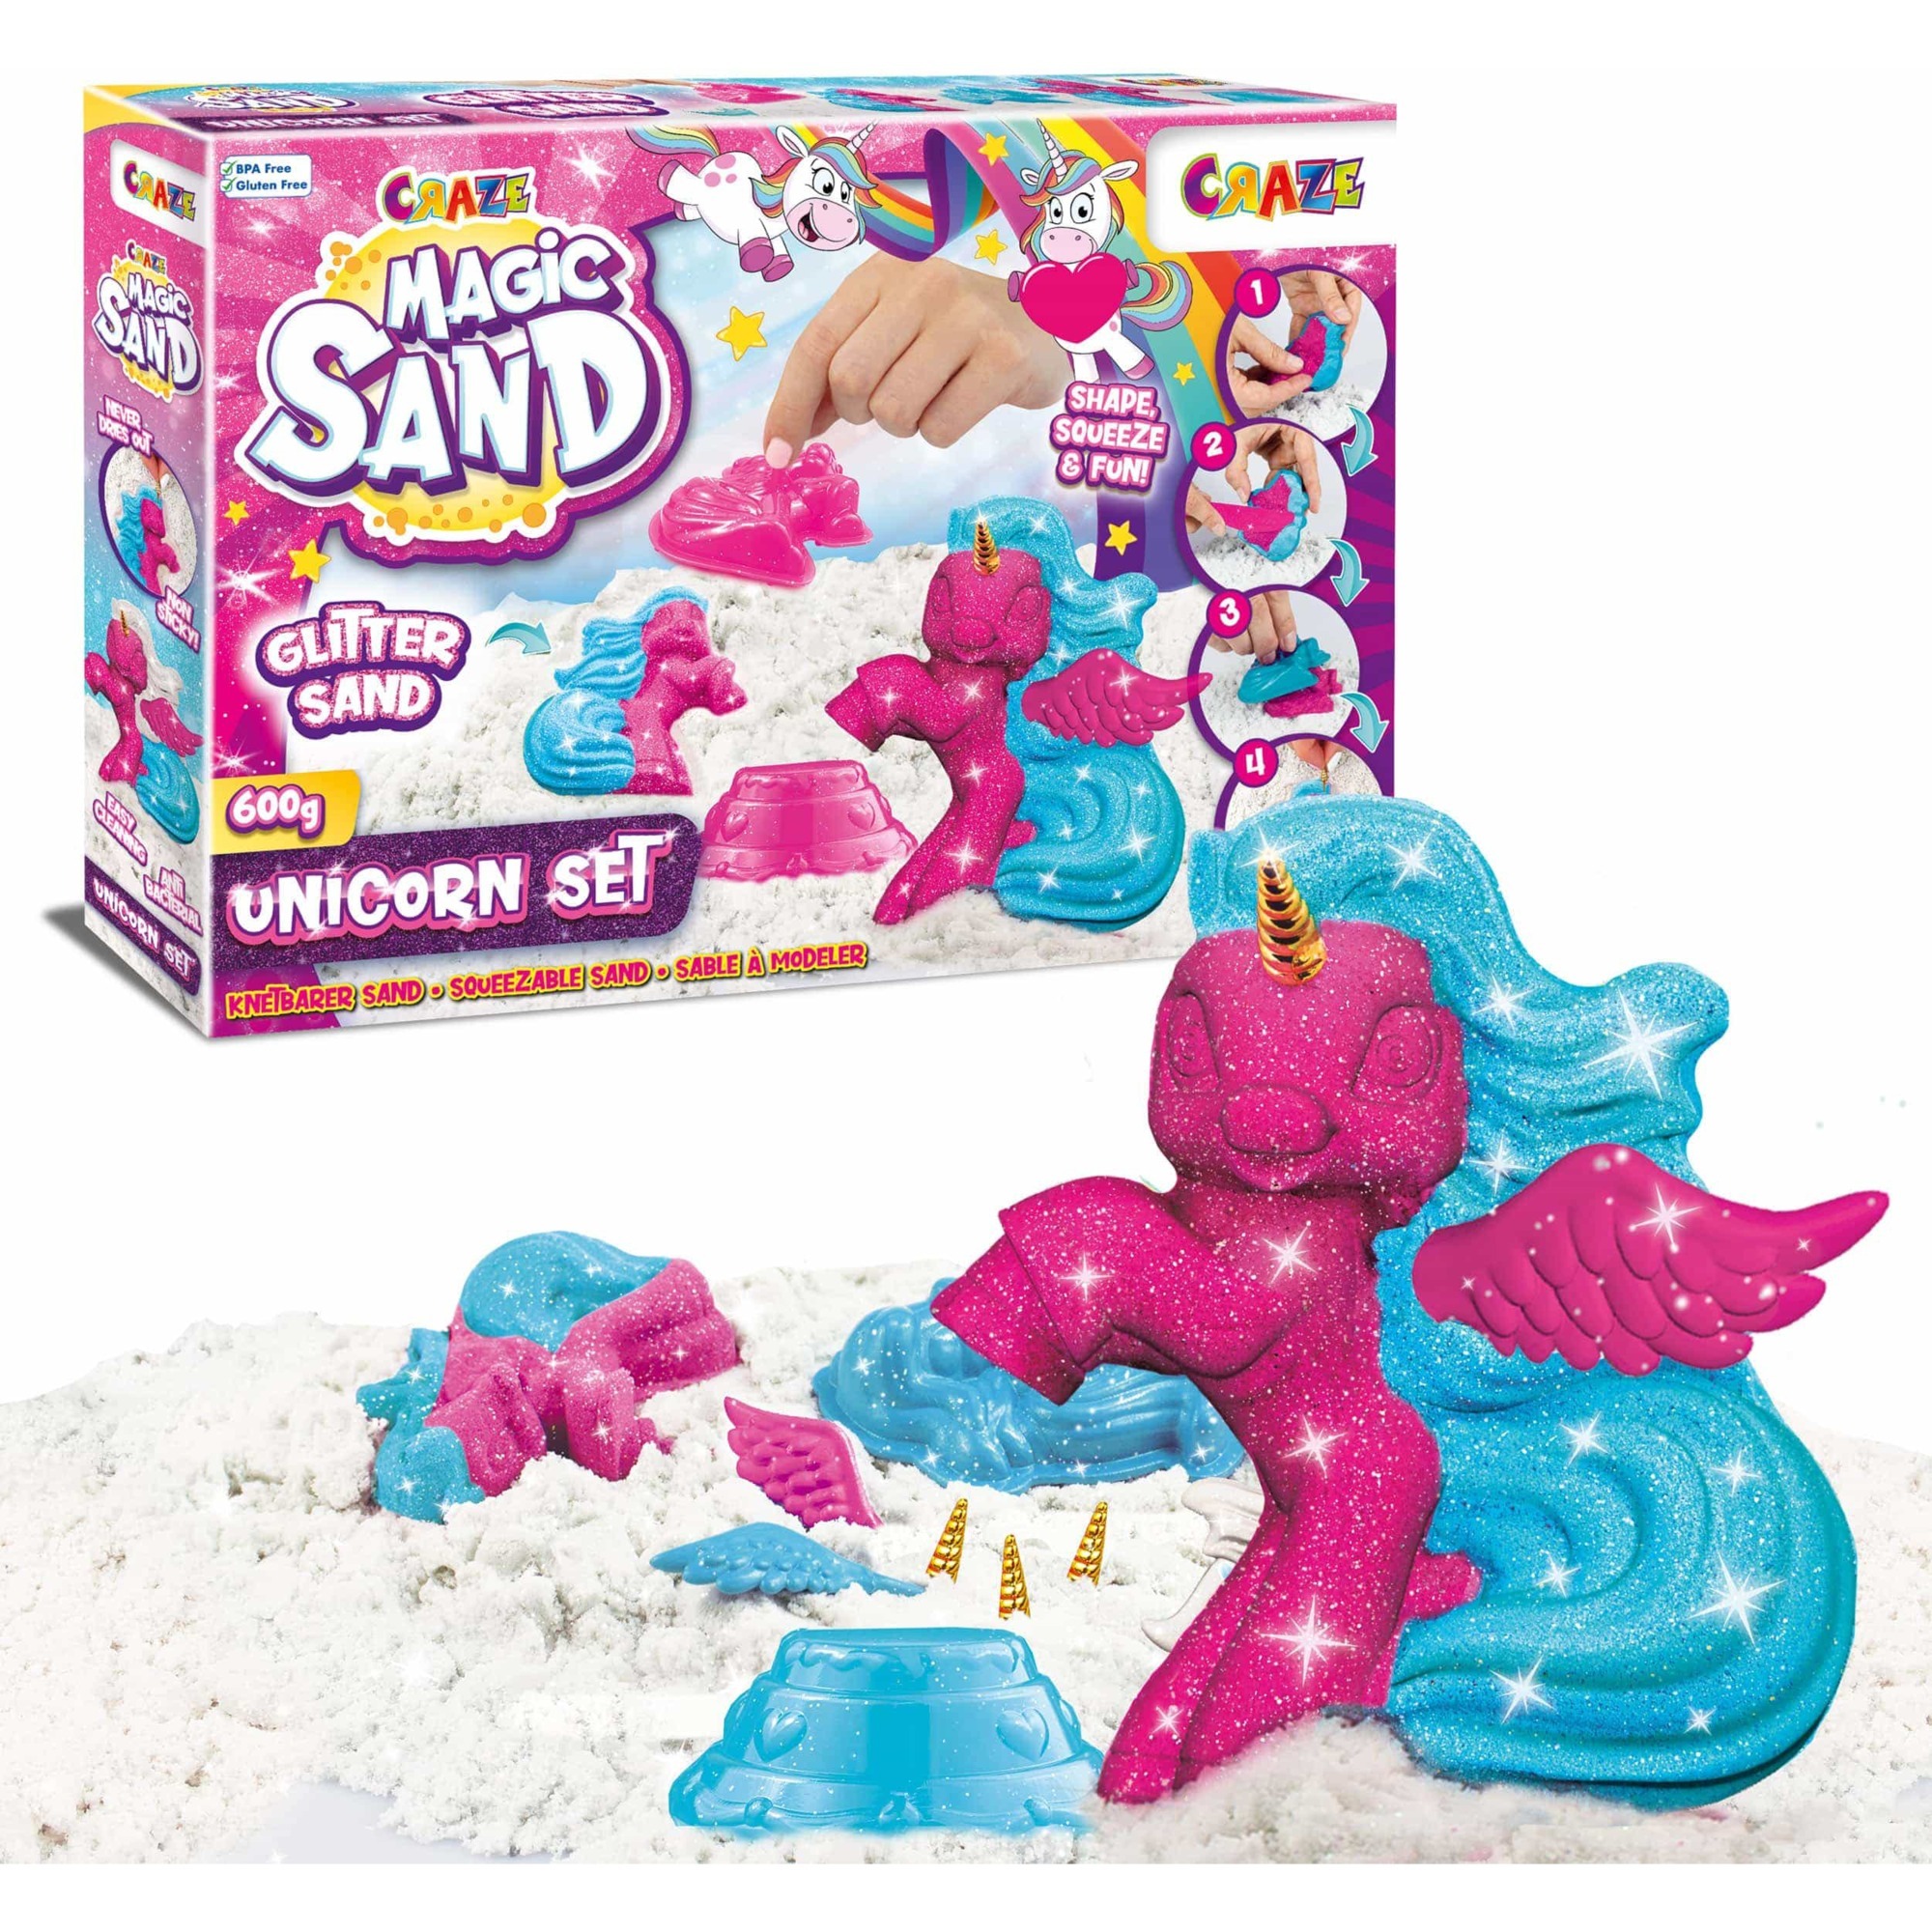 Image of Alternate - Magic Sand Unicorn Set, Spielsand online einkaufen bei Alternate